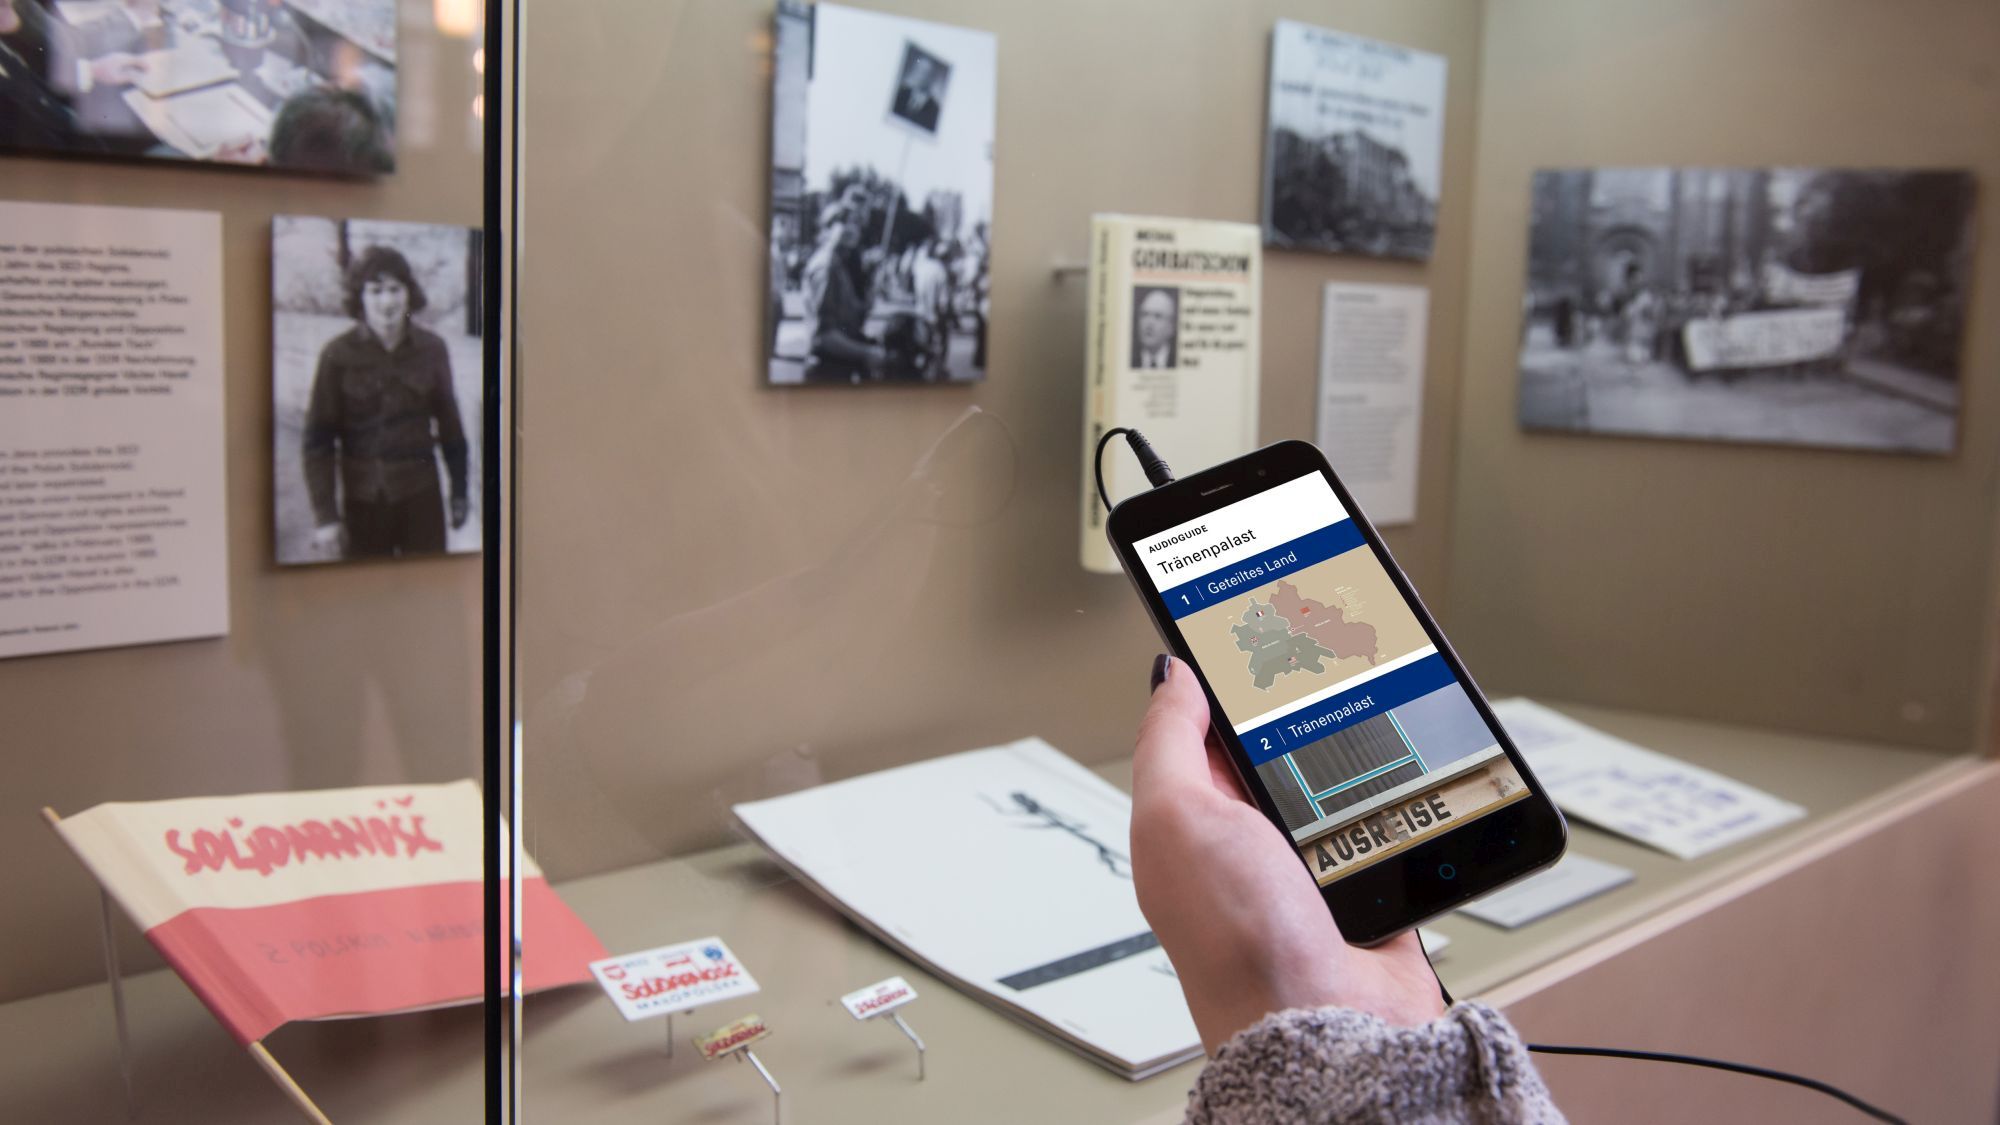 Hand mit Smartphone, auf dem Display zu sehen ist der AudioGuide zur Dauerausstellung 'Ort der deutschen Teilung' im Tränenpalast Berlin